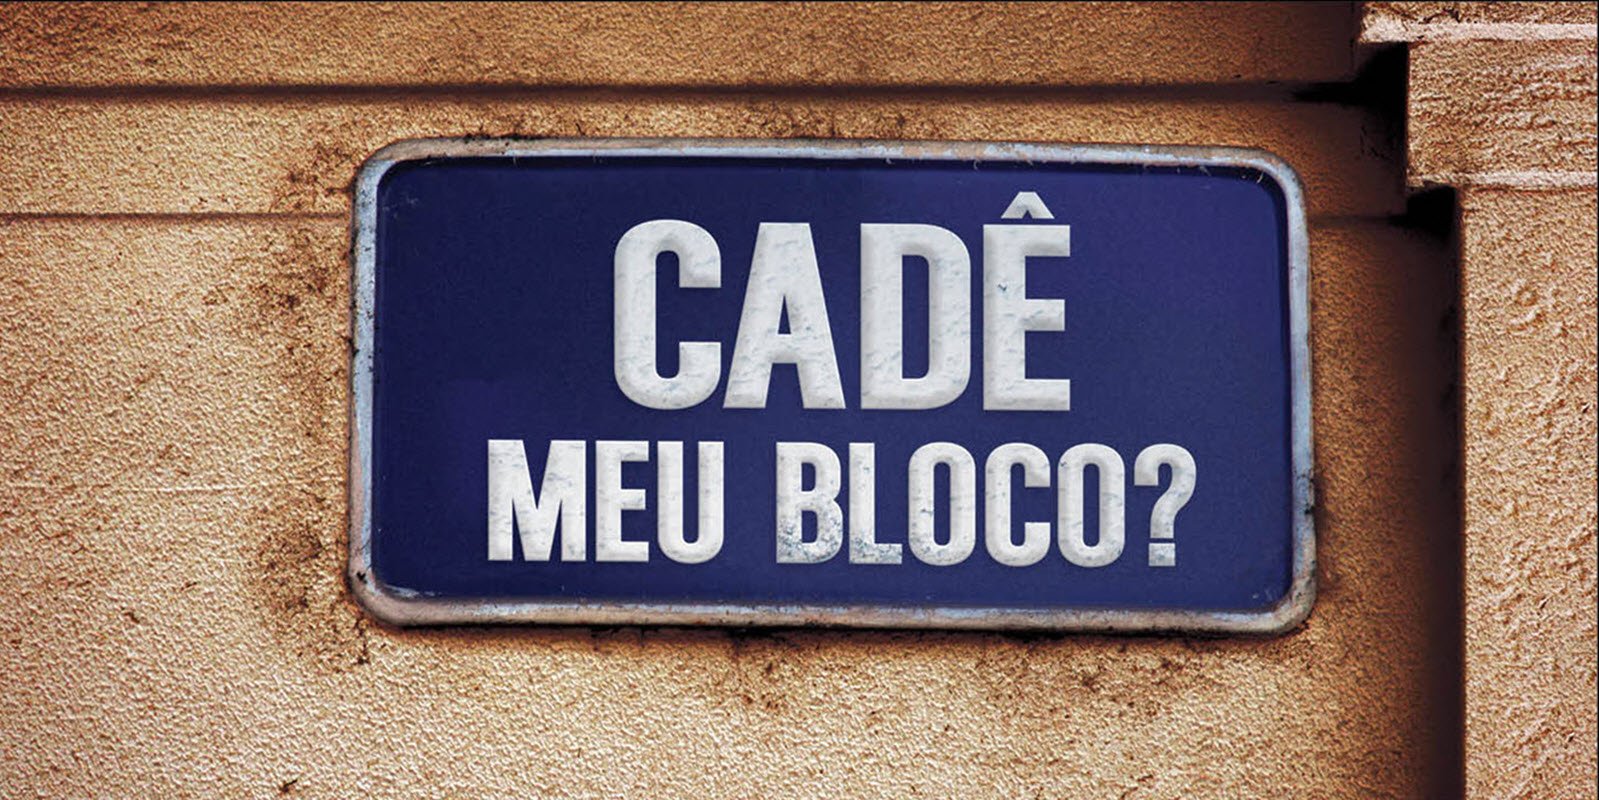 Featured image for “Cadê meu bloco?”